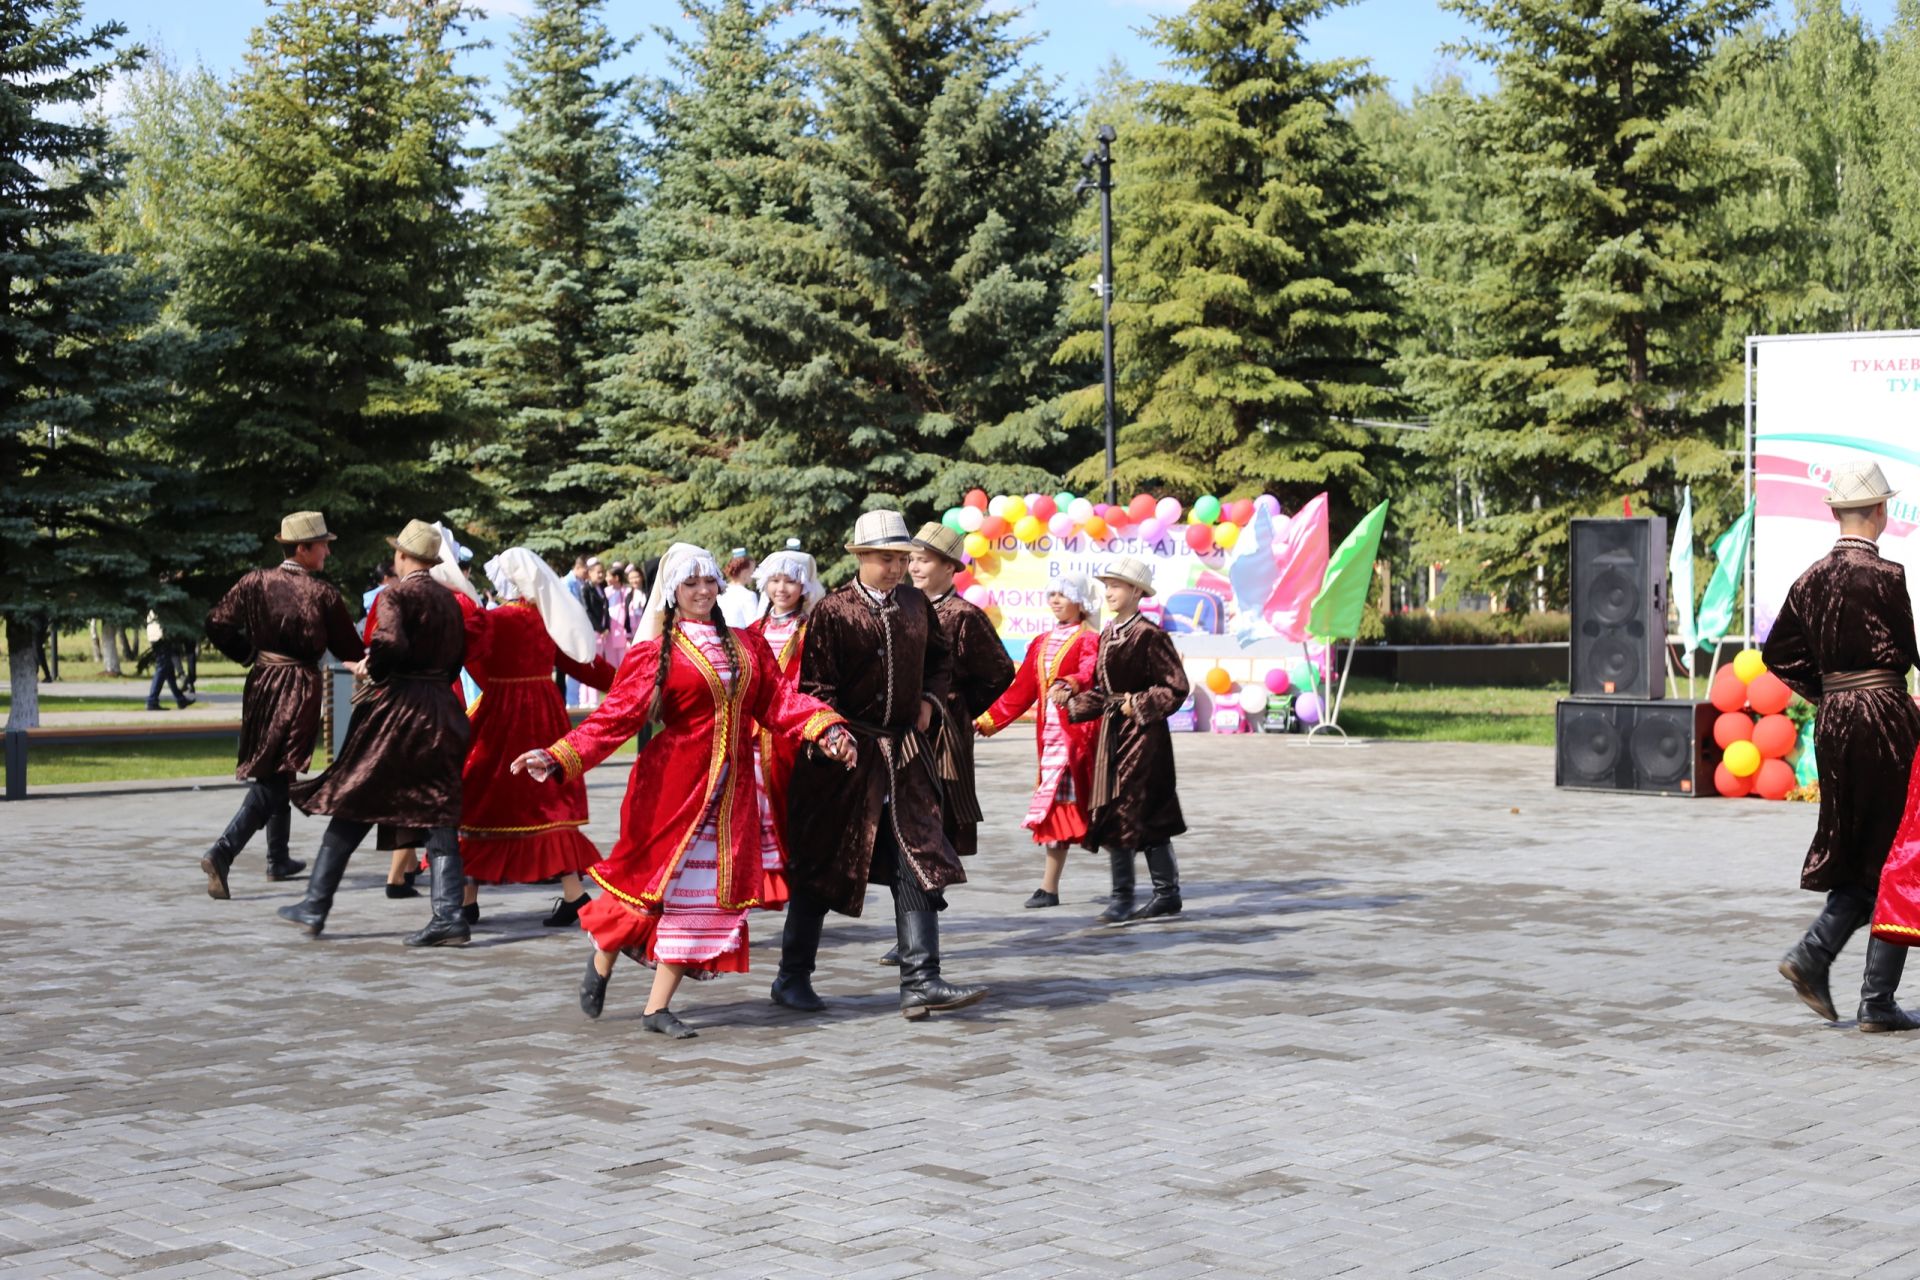 Поздравляем вас с праздником – Днем республики Татарстан